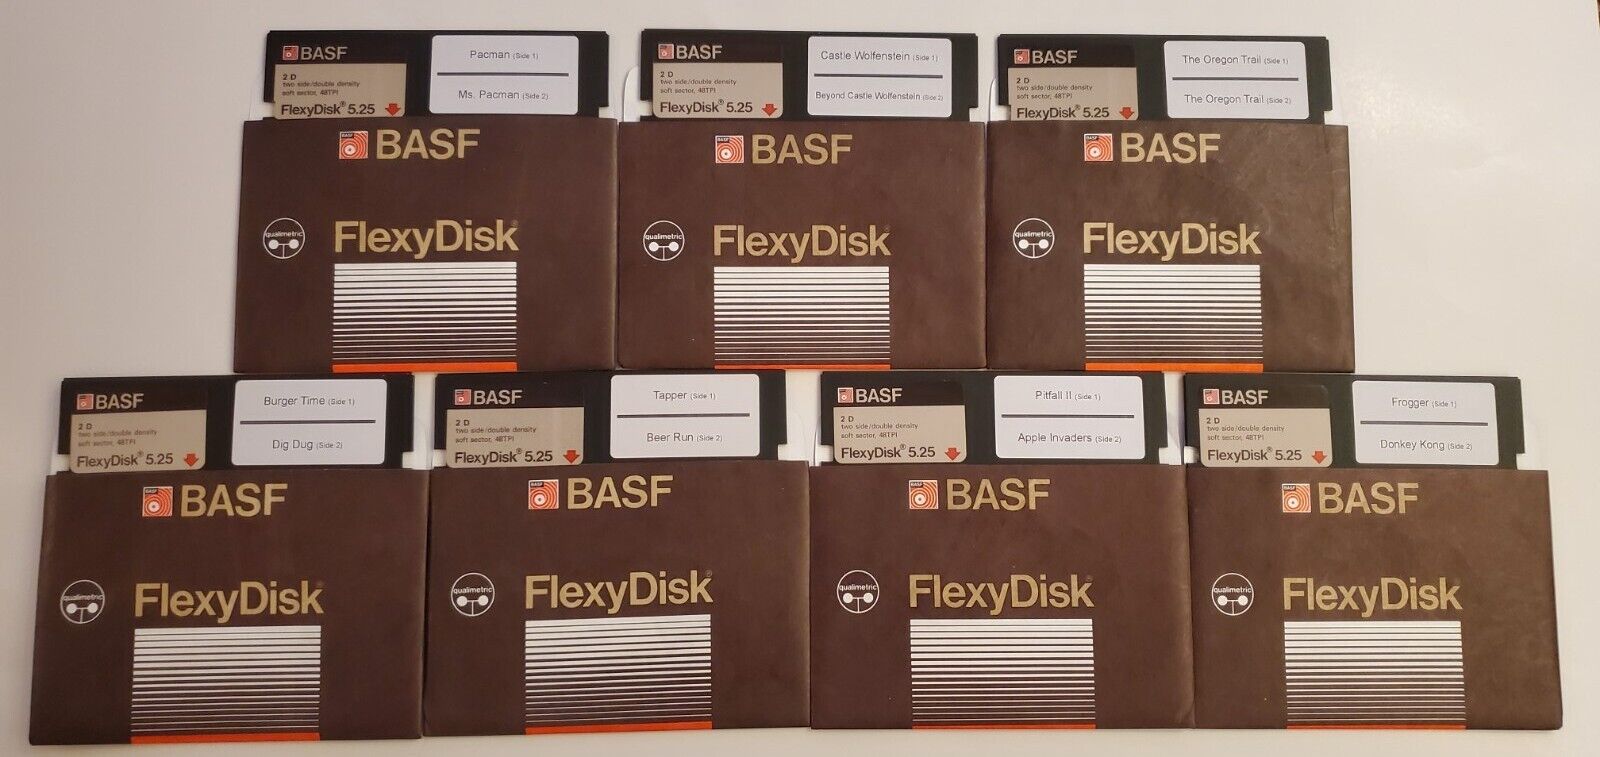 Apple II, II+, IIe, IIc, IIgs: Classic software games on floppy disk #1